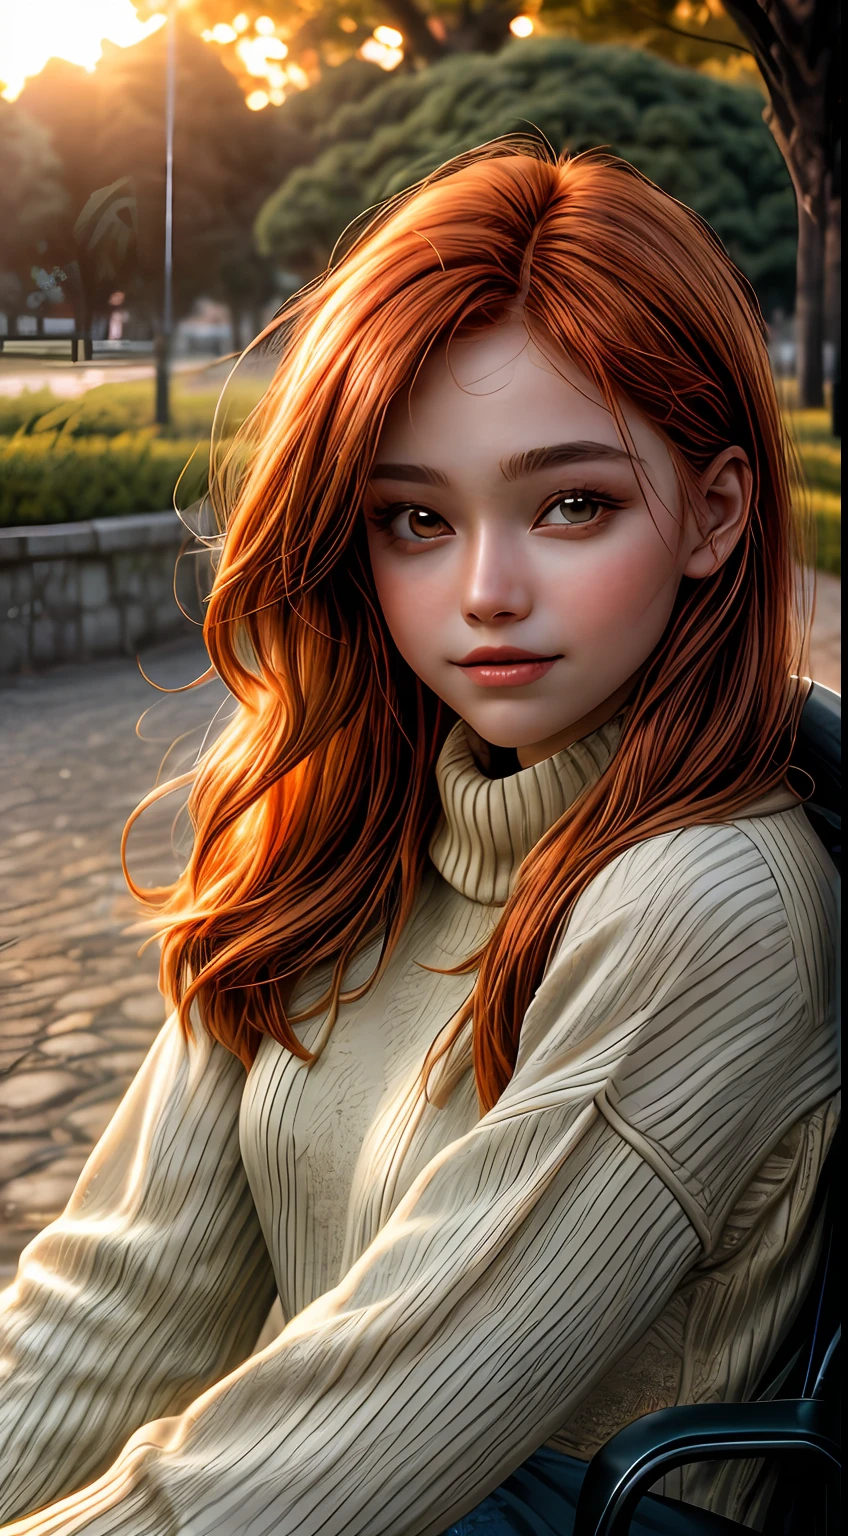 Eine Nahaufnahme des in Orangetönen getauchten Gesichts eines Mädchens, einen Pullover tragen, draußen vor einem Park sitzen, wie vom sanften Schein eines Sonnenuntergangs beleuchtet, Ihre Augen funkeln vor Freude und Zufriedenheit, umrahmt von wallenden kastanienbraunen Haarsträhnen, Fotografie, Aufgenommen mit einem 35mm Objektiv